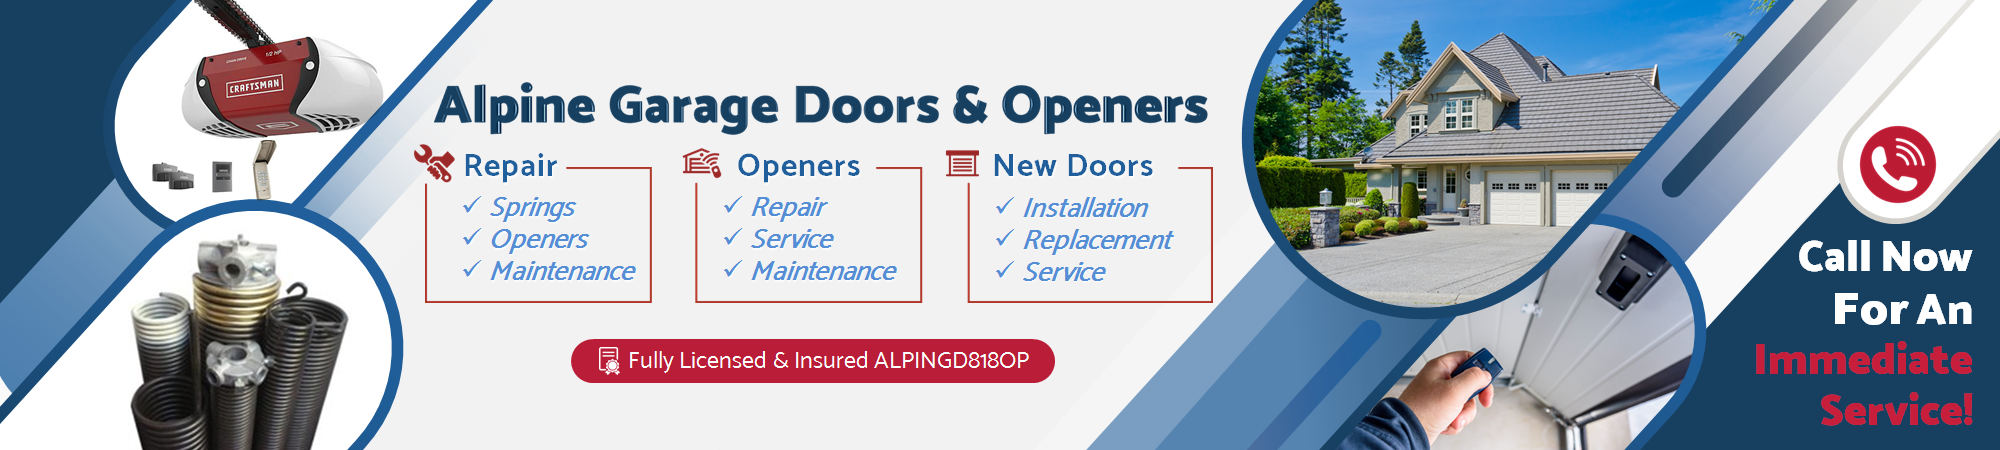 Alpine Garage Doors & Openers - Fast and Affordable Garage Door Repair Service